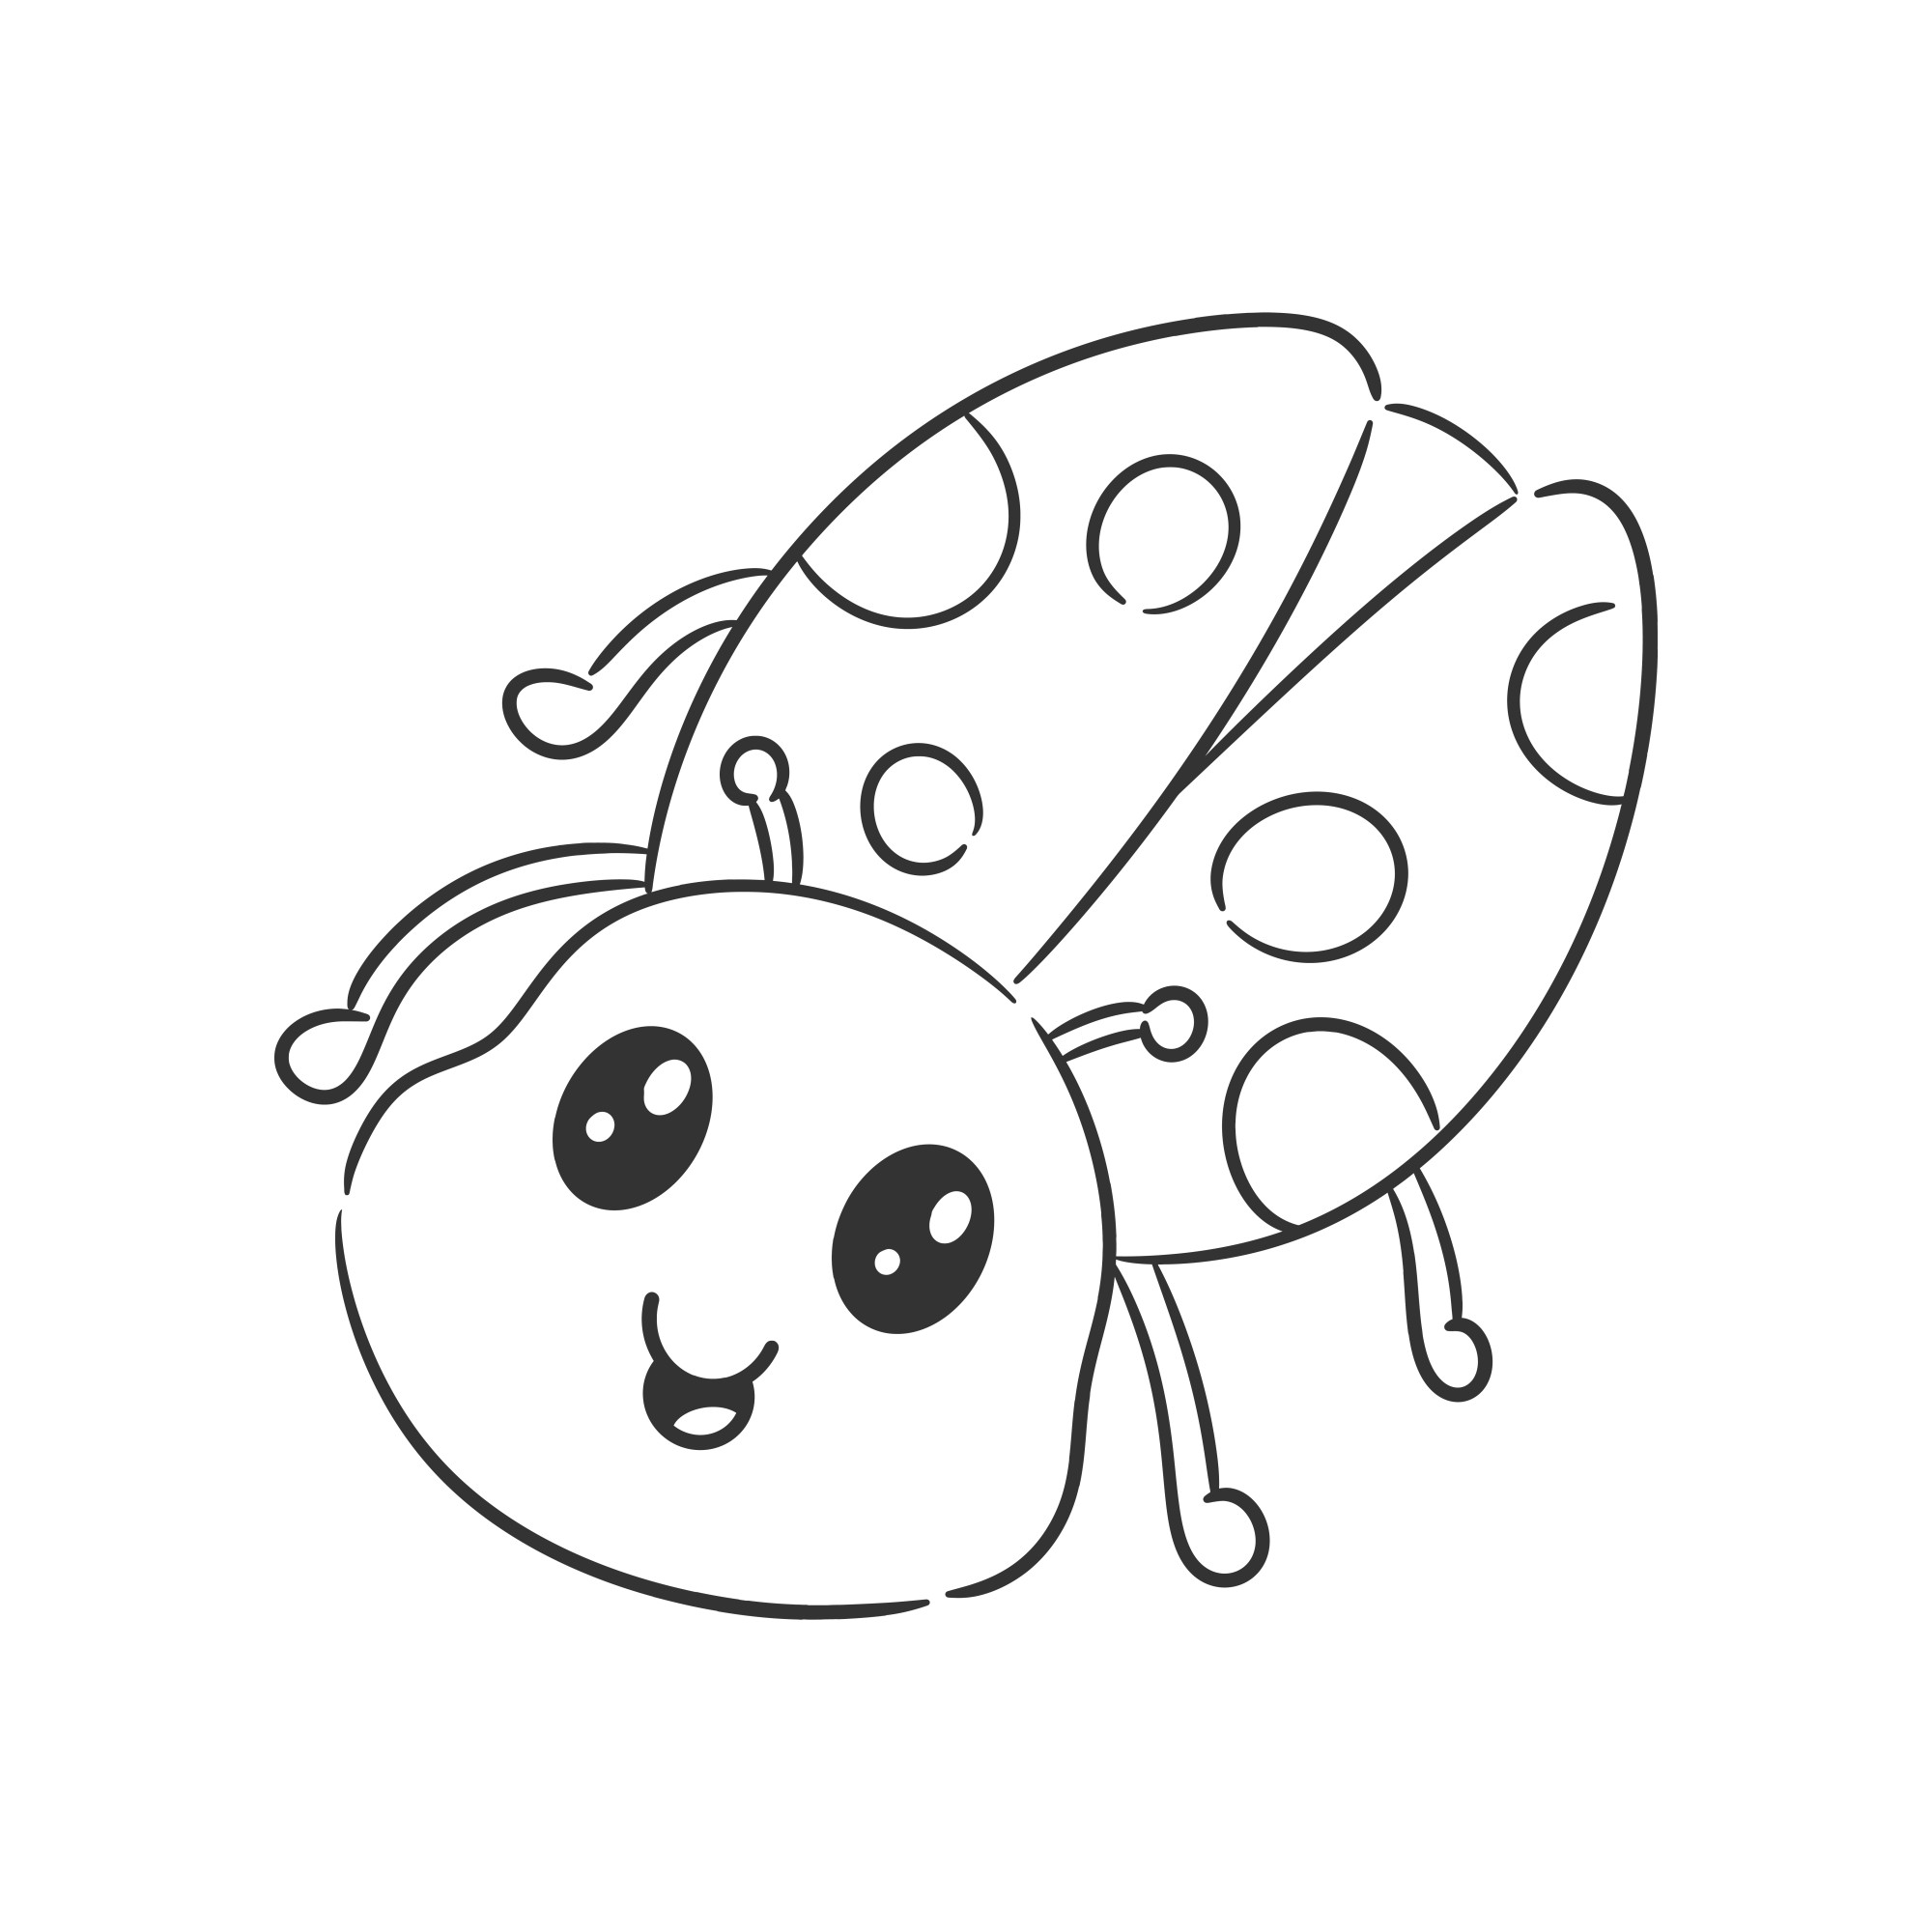 Раскраска для детей: милое насекомое божья коровка с очаровательными глазами